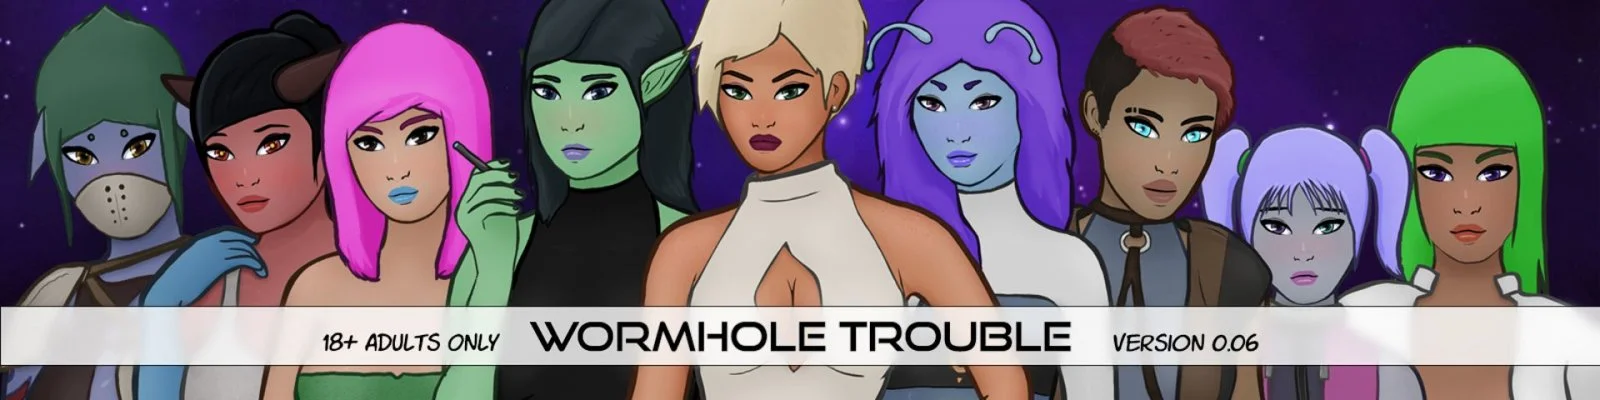 Wormhole Trouble [v0.06] main image